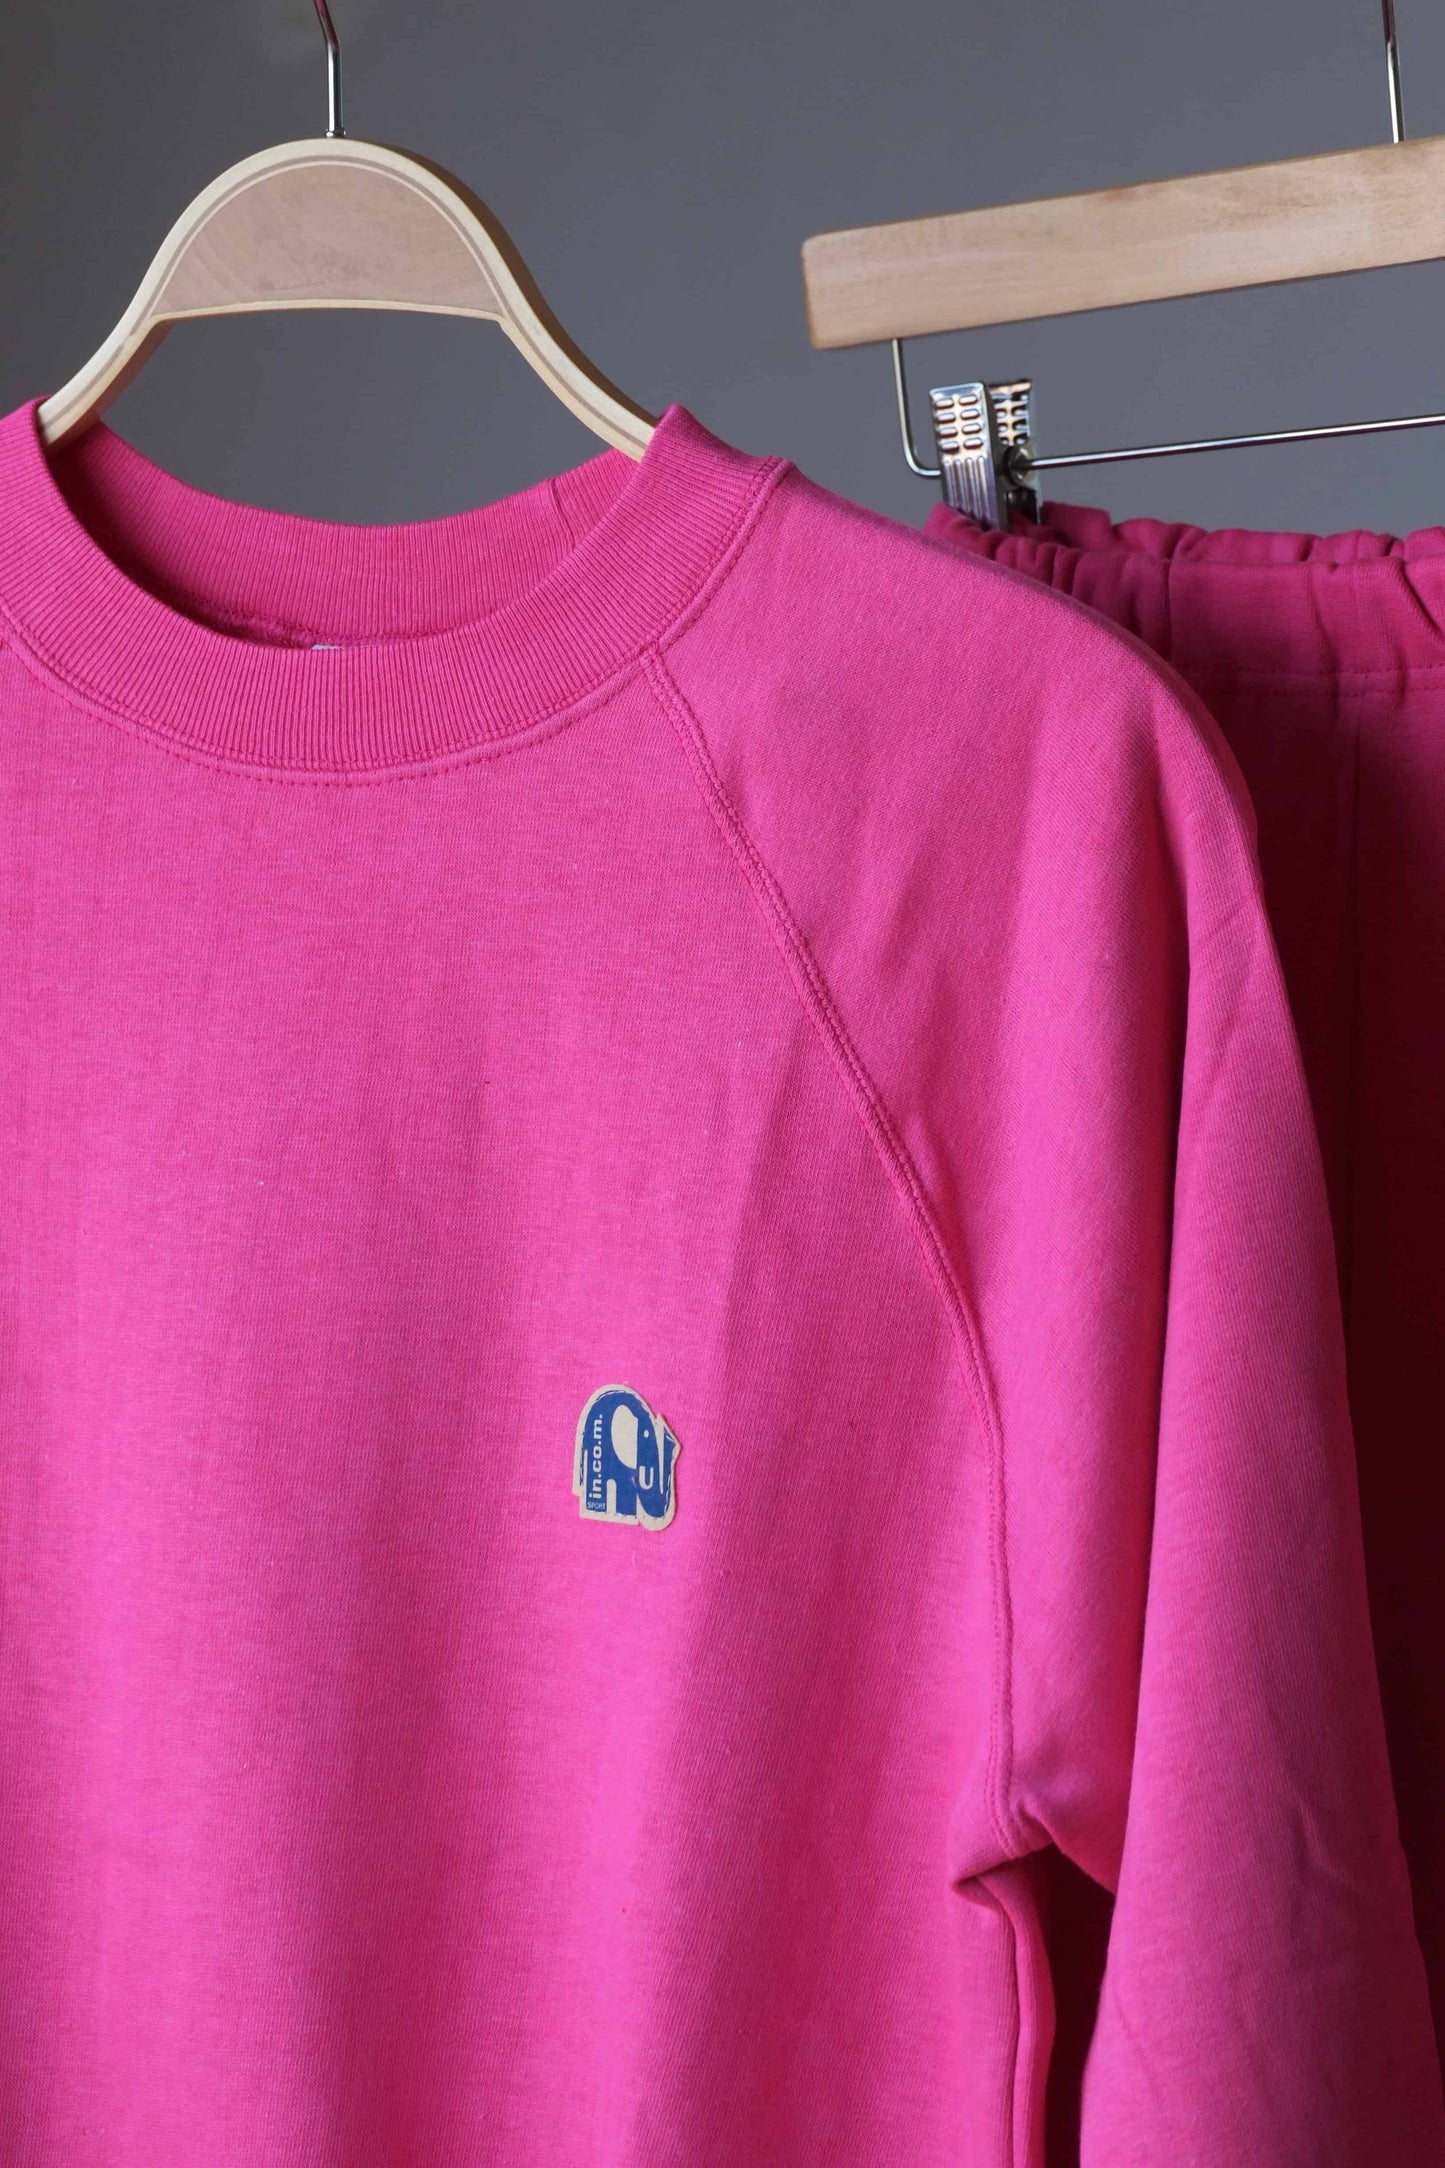 80's Comfy Jogging Suit pink close up